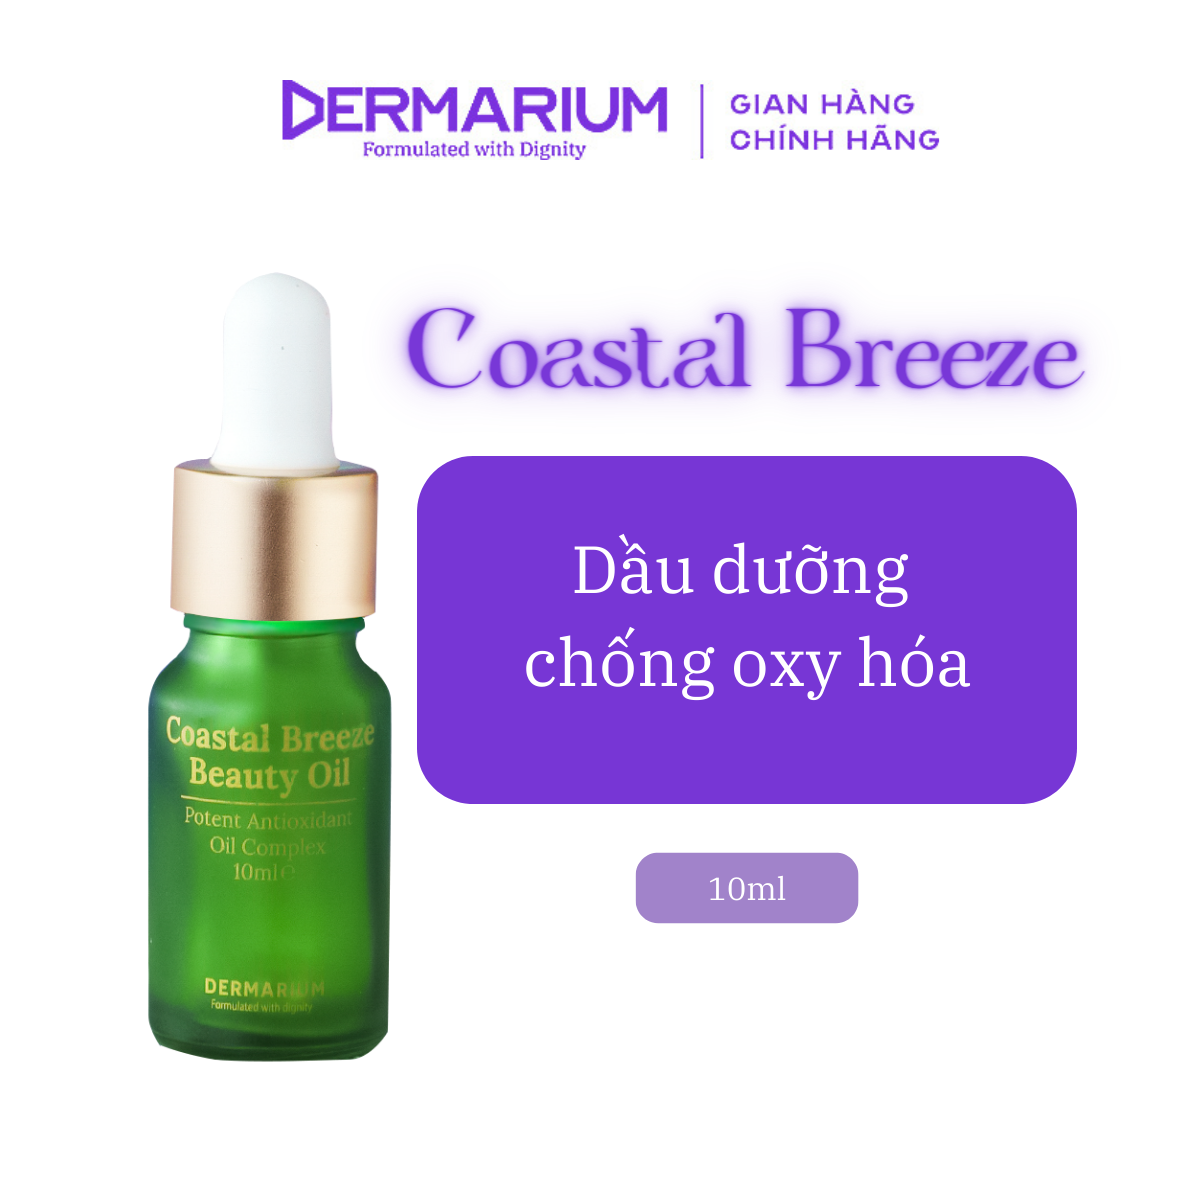 Dermarium Coastal Breeze - Dầu dưỡng hỗ trợ ngăn ngừa lão hoá